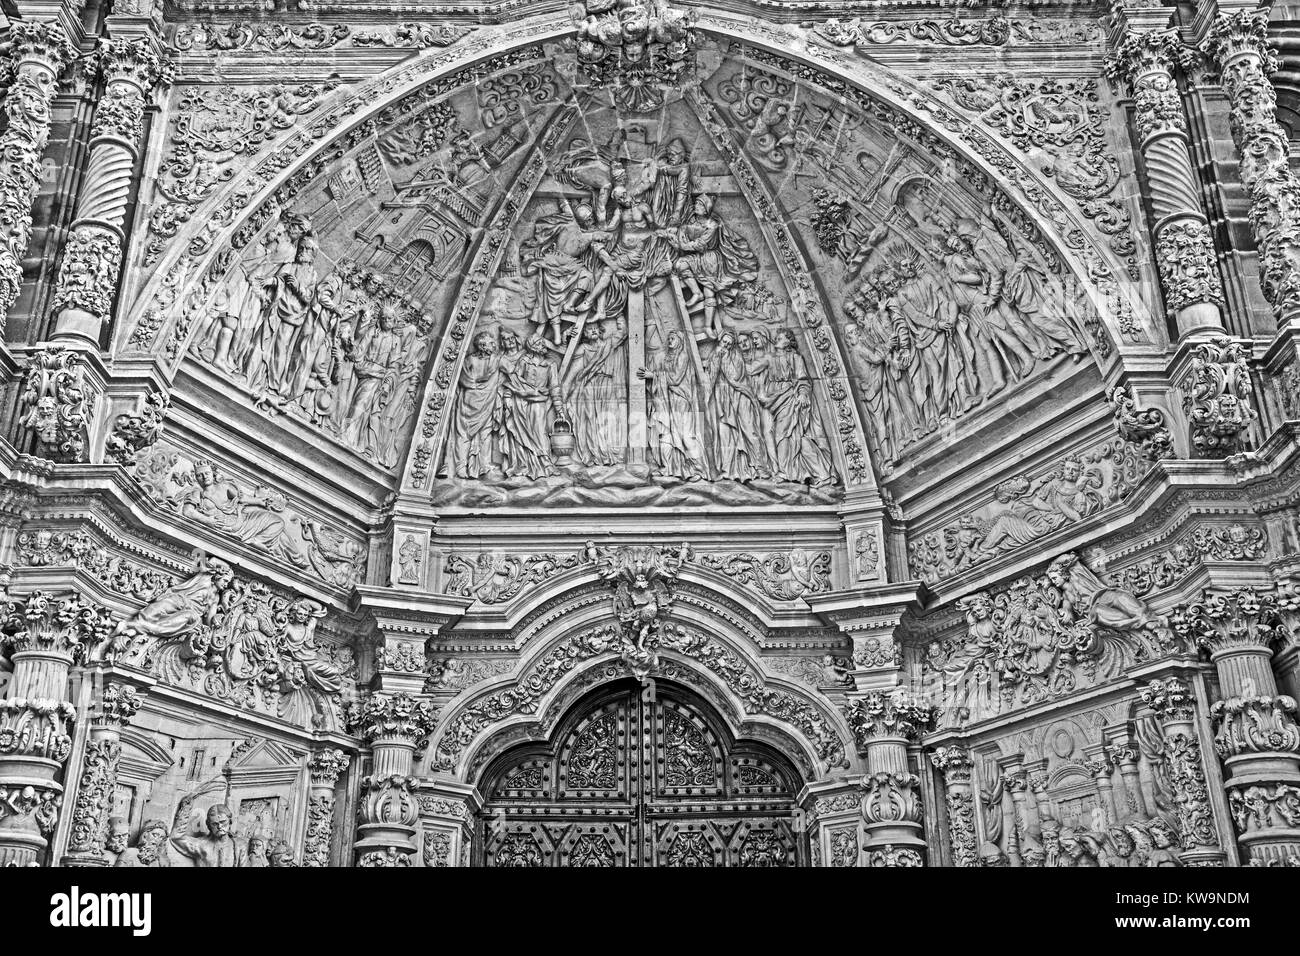 Cathédrale de Santa Maria, Astorga, Espagne (1471-1693) Banque D'Images